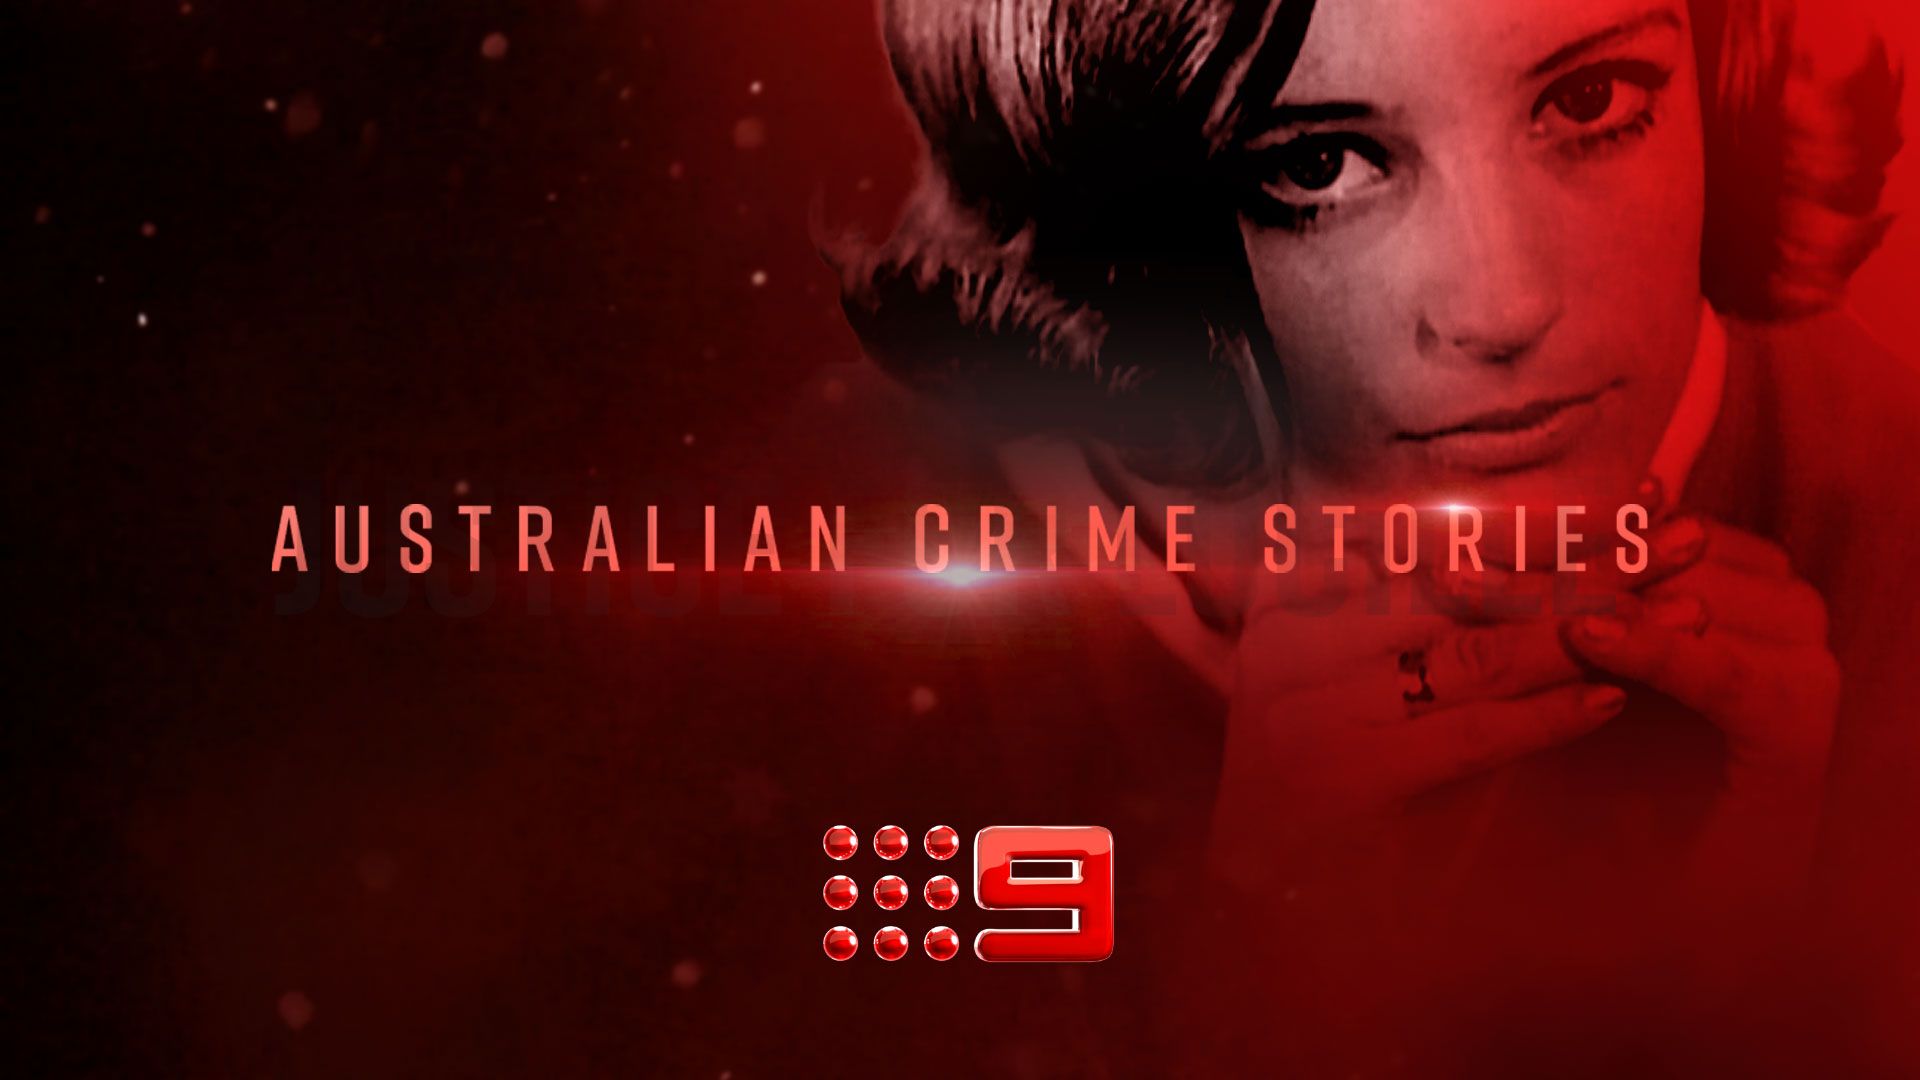   Australian Crime Stories  Source: Nine Entertainment Co. 